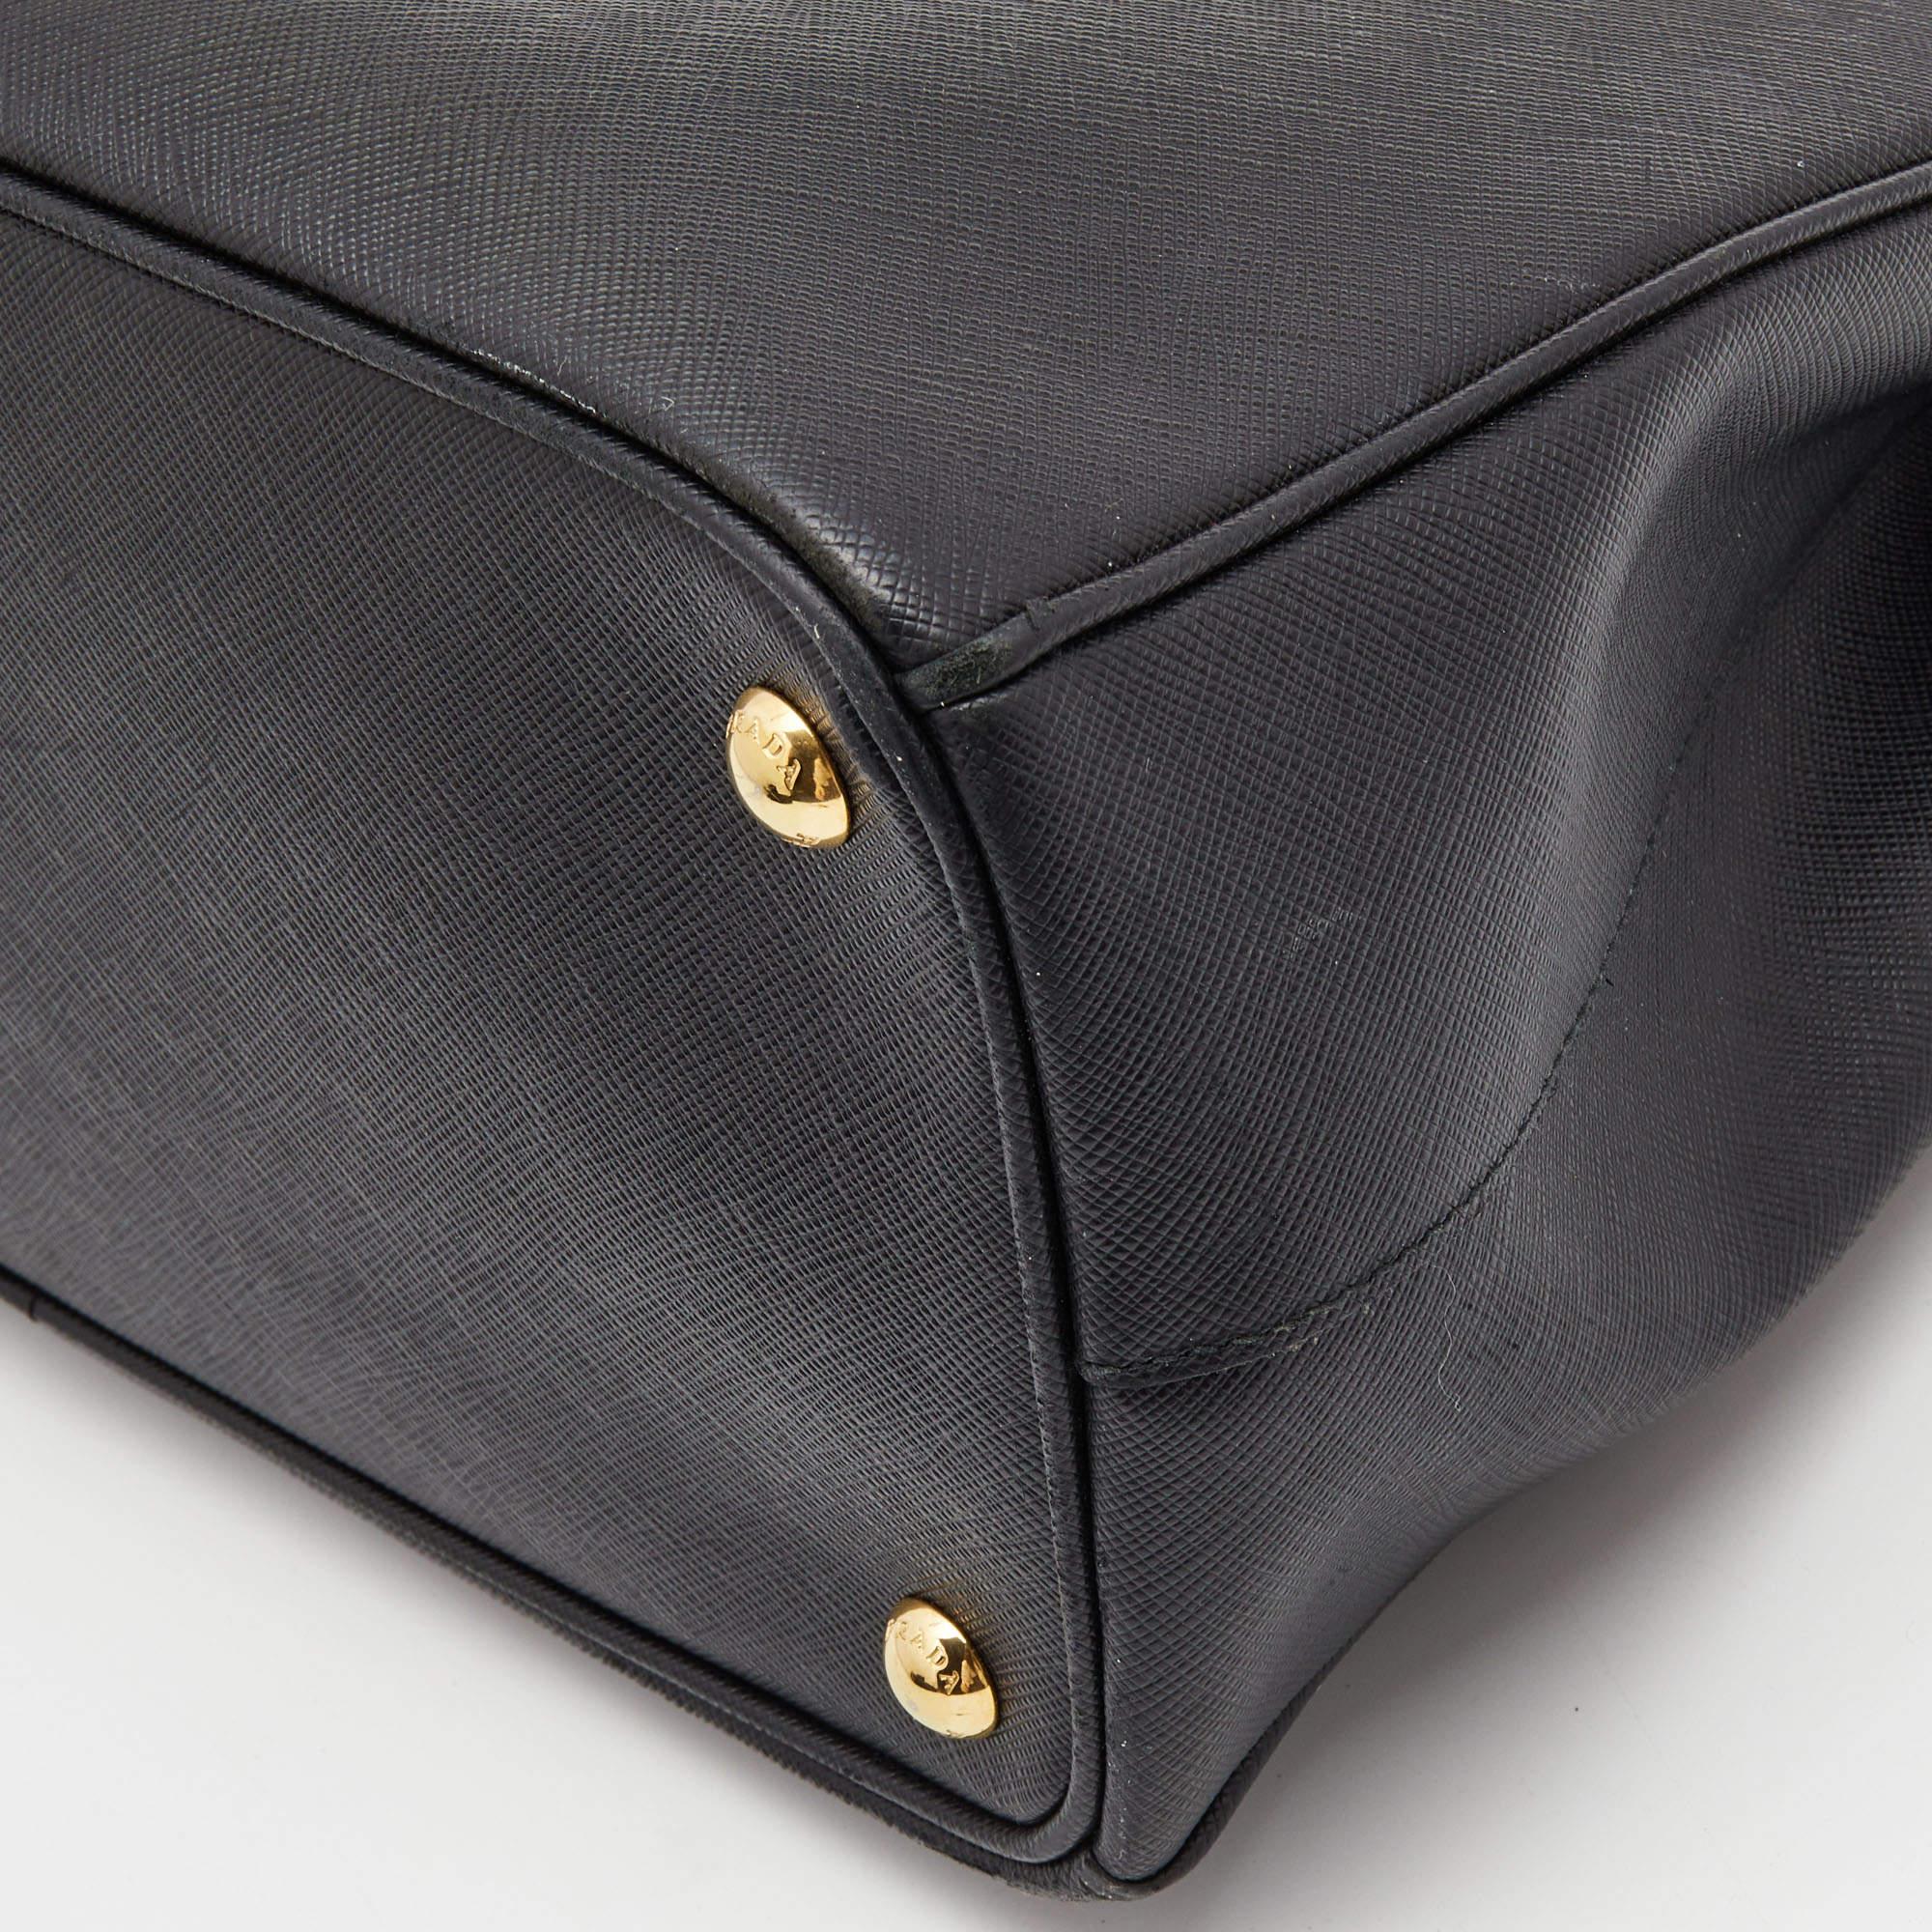 Prada Black Saffiano Leather Medium Galleria Double Zip Tote 2